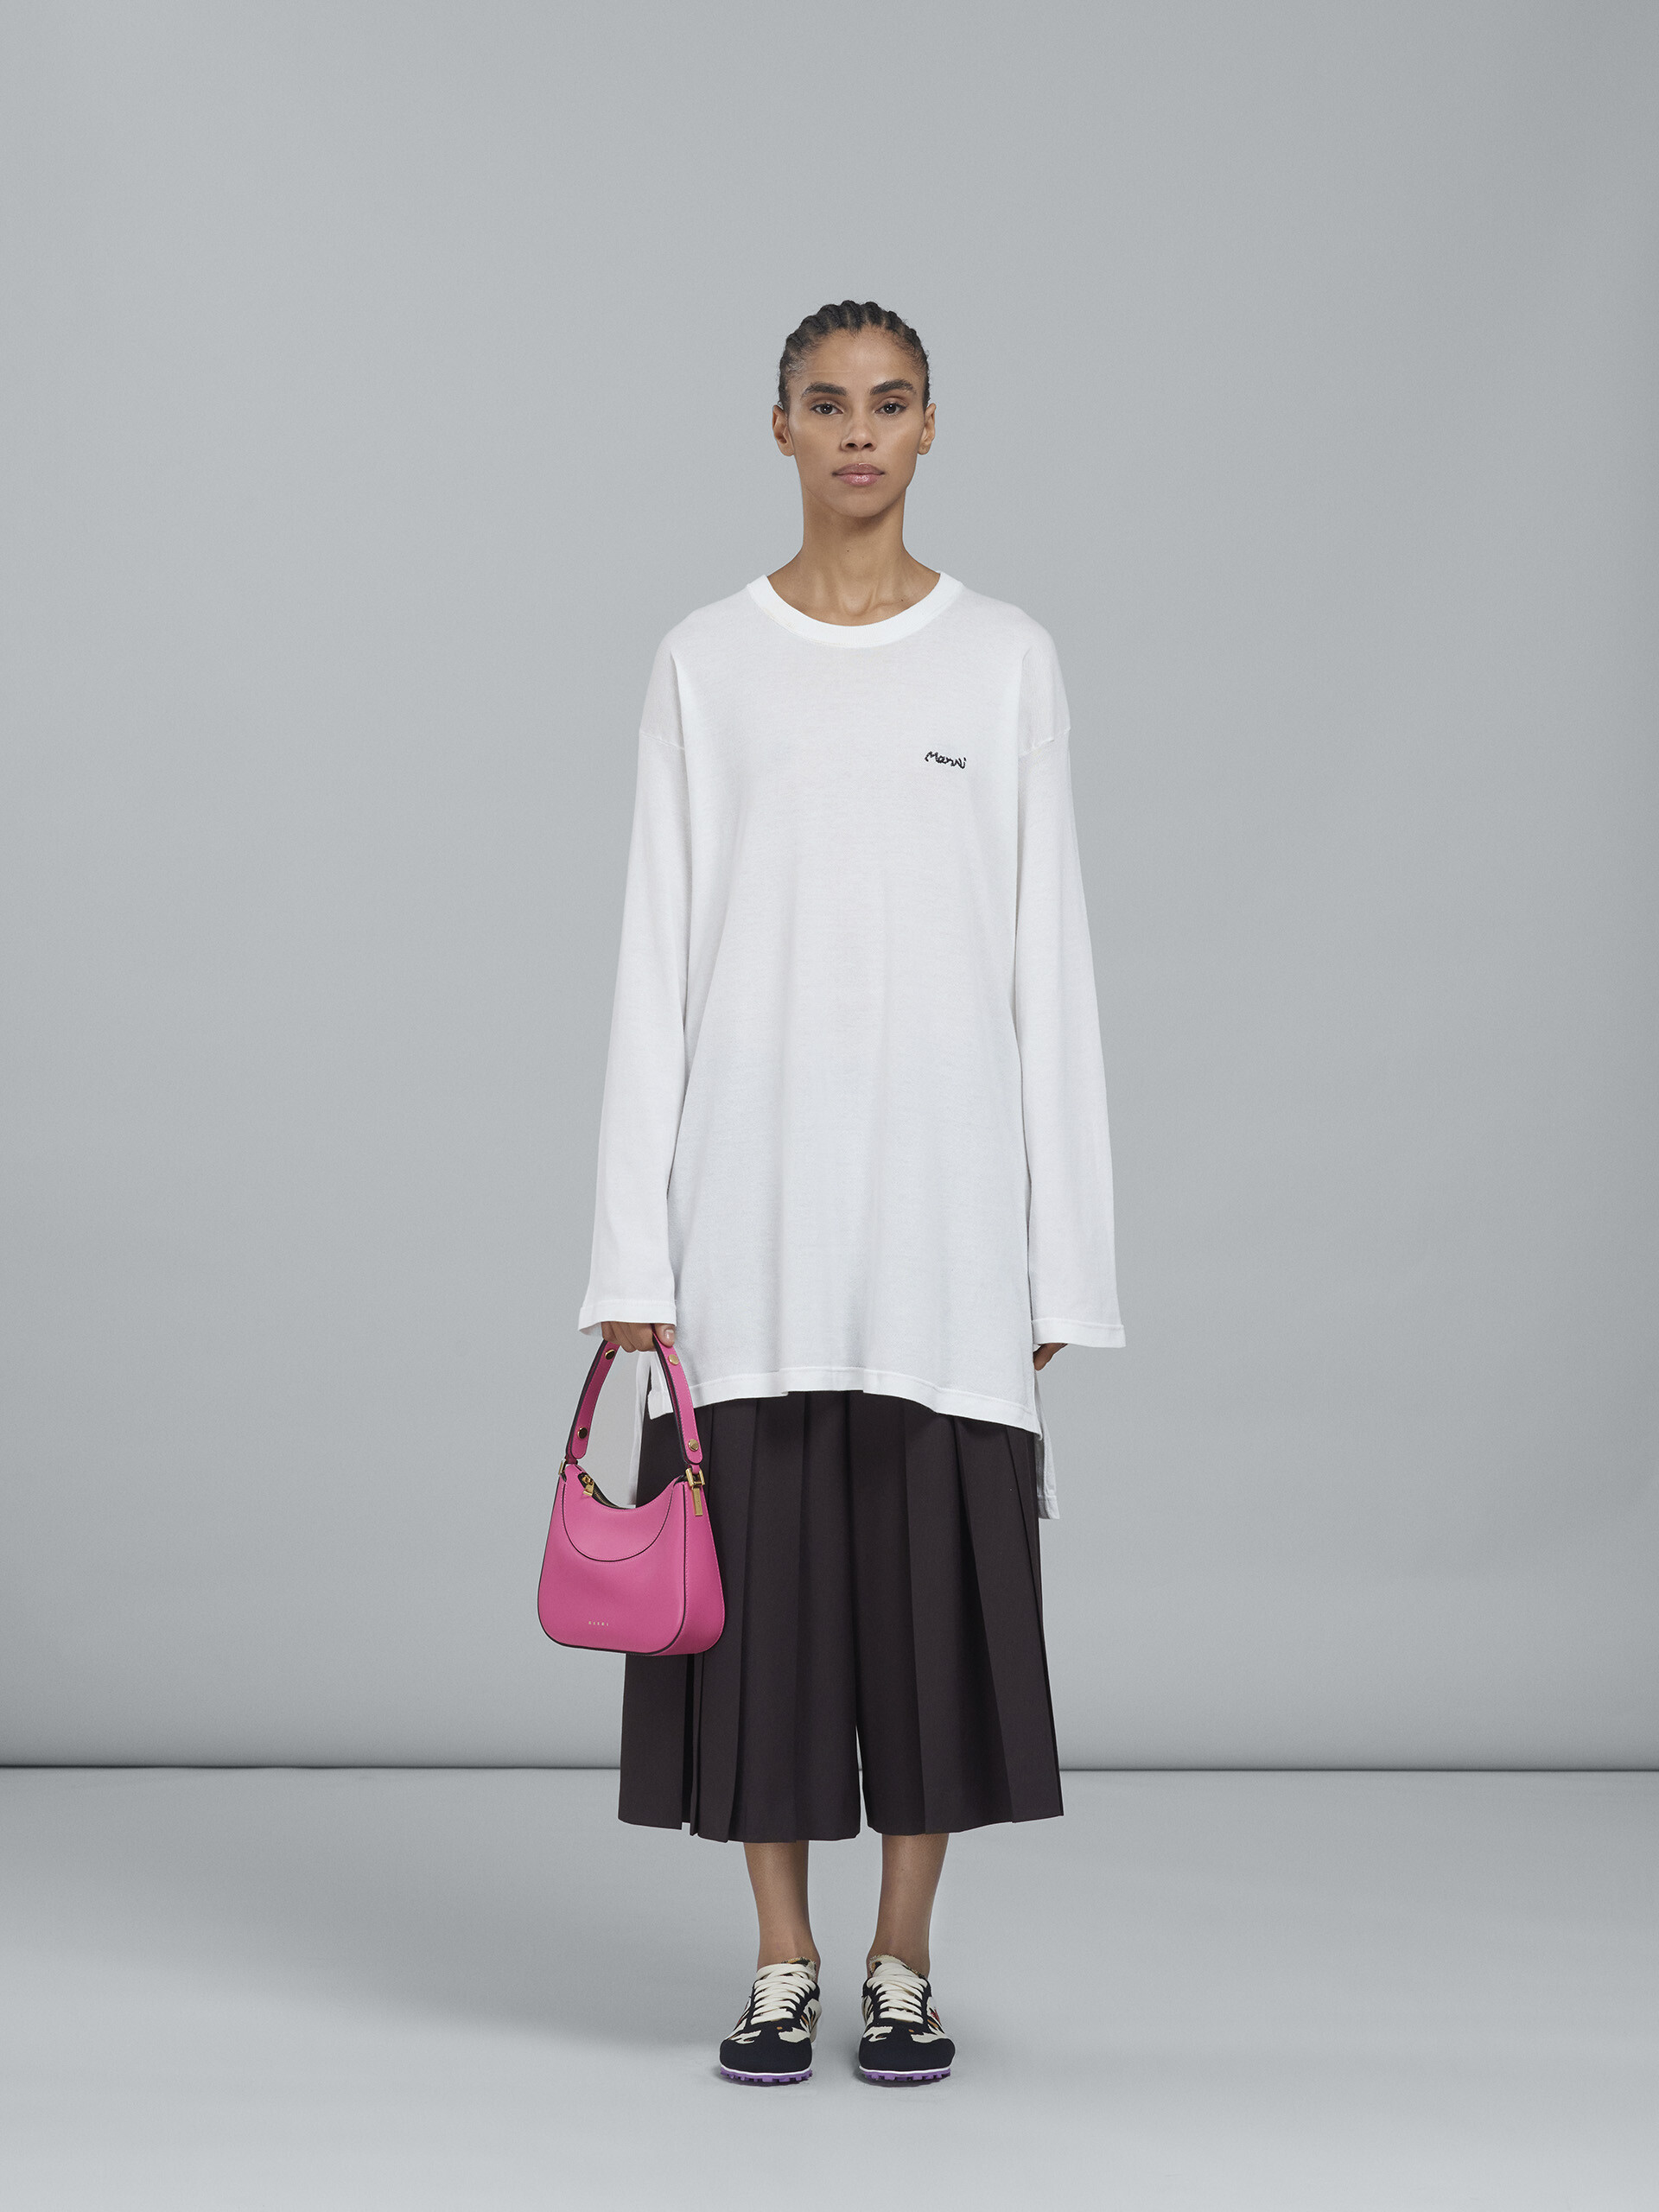 Milano bag mini in pelle rosa - Borse a mano - Image 2